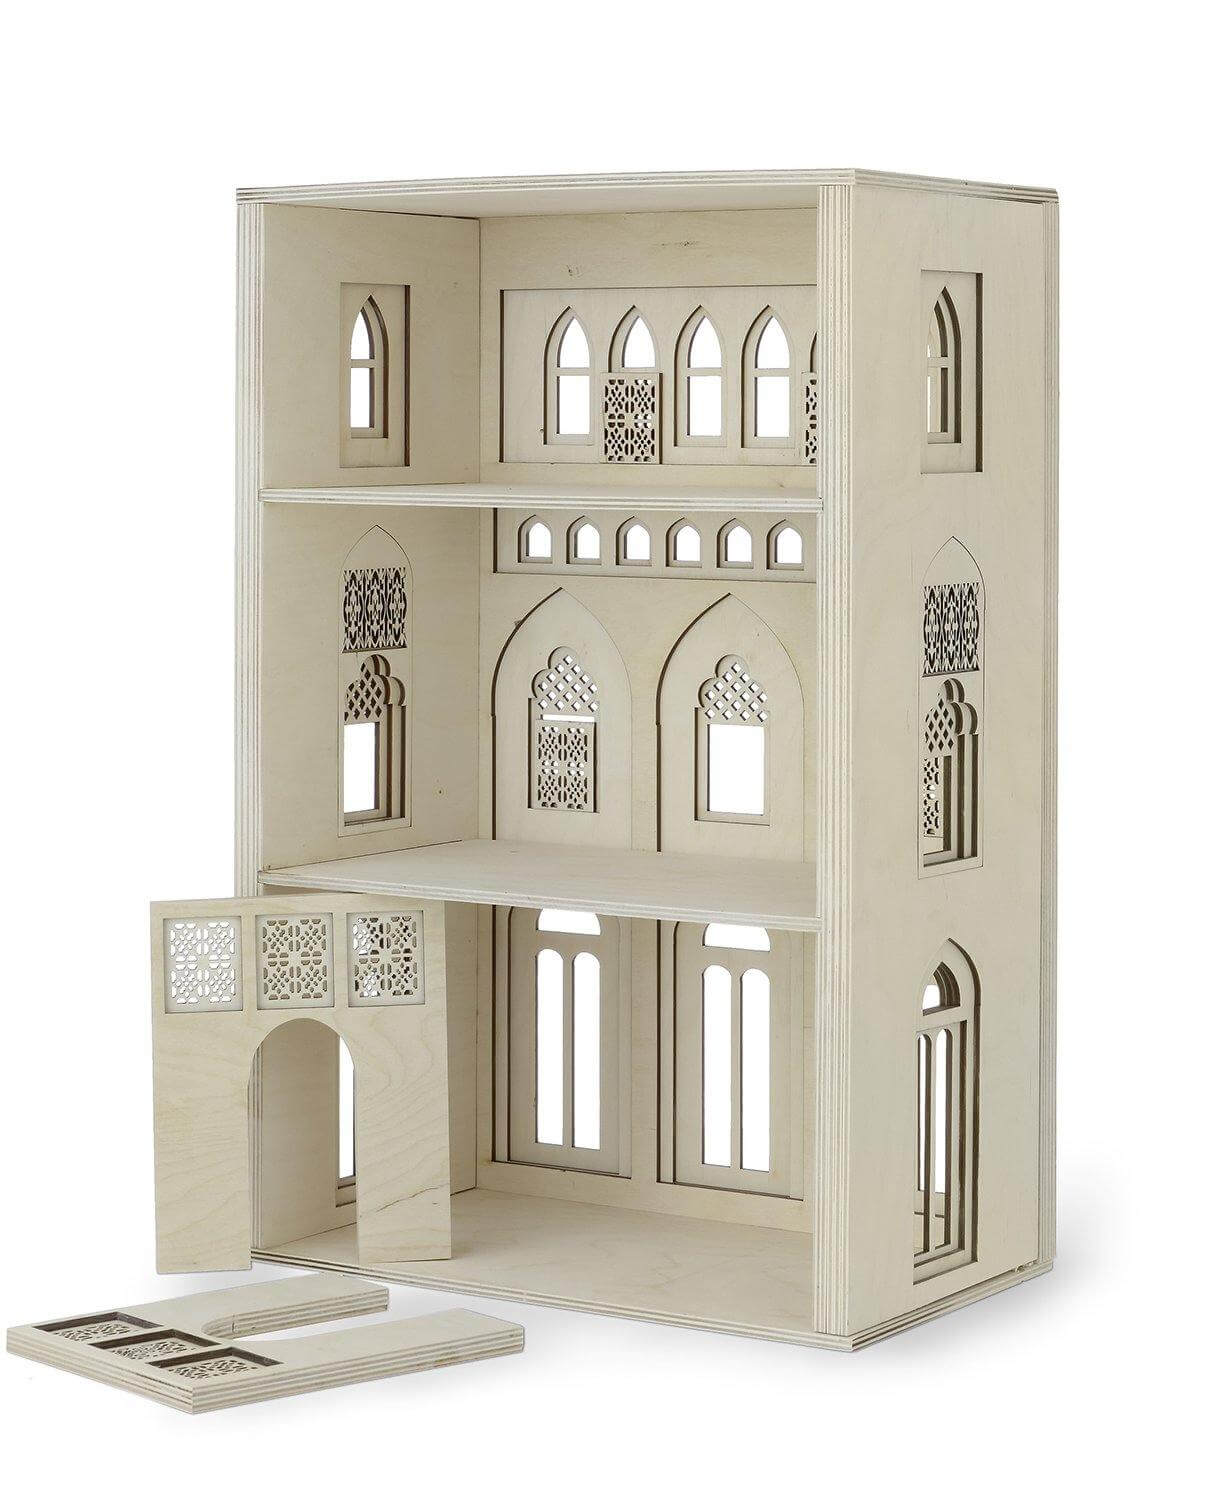 Miniature House - Play House - Doll House. Fra Kolekto